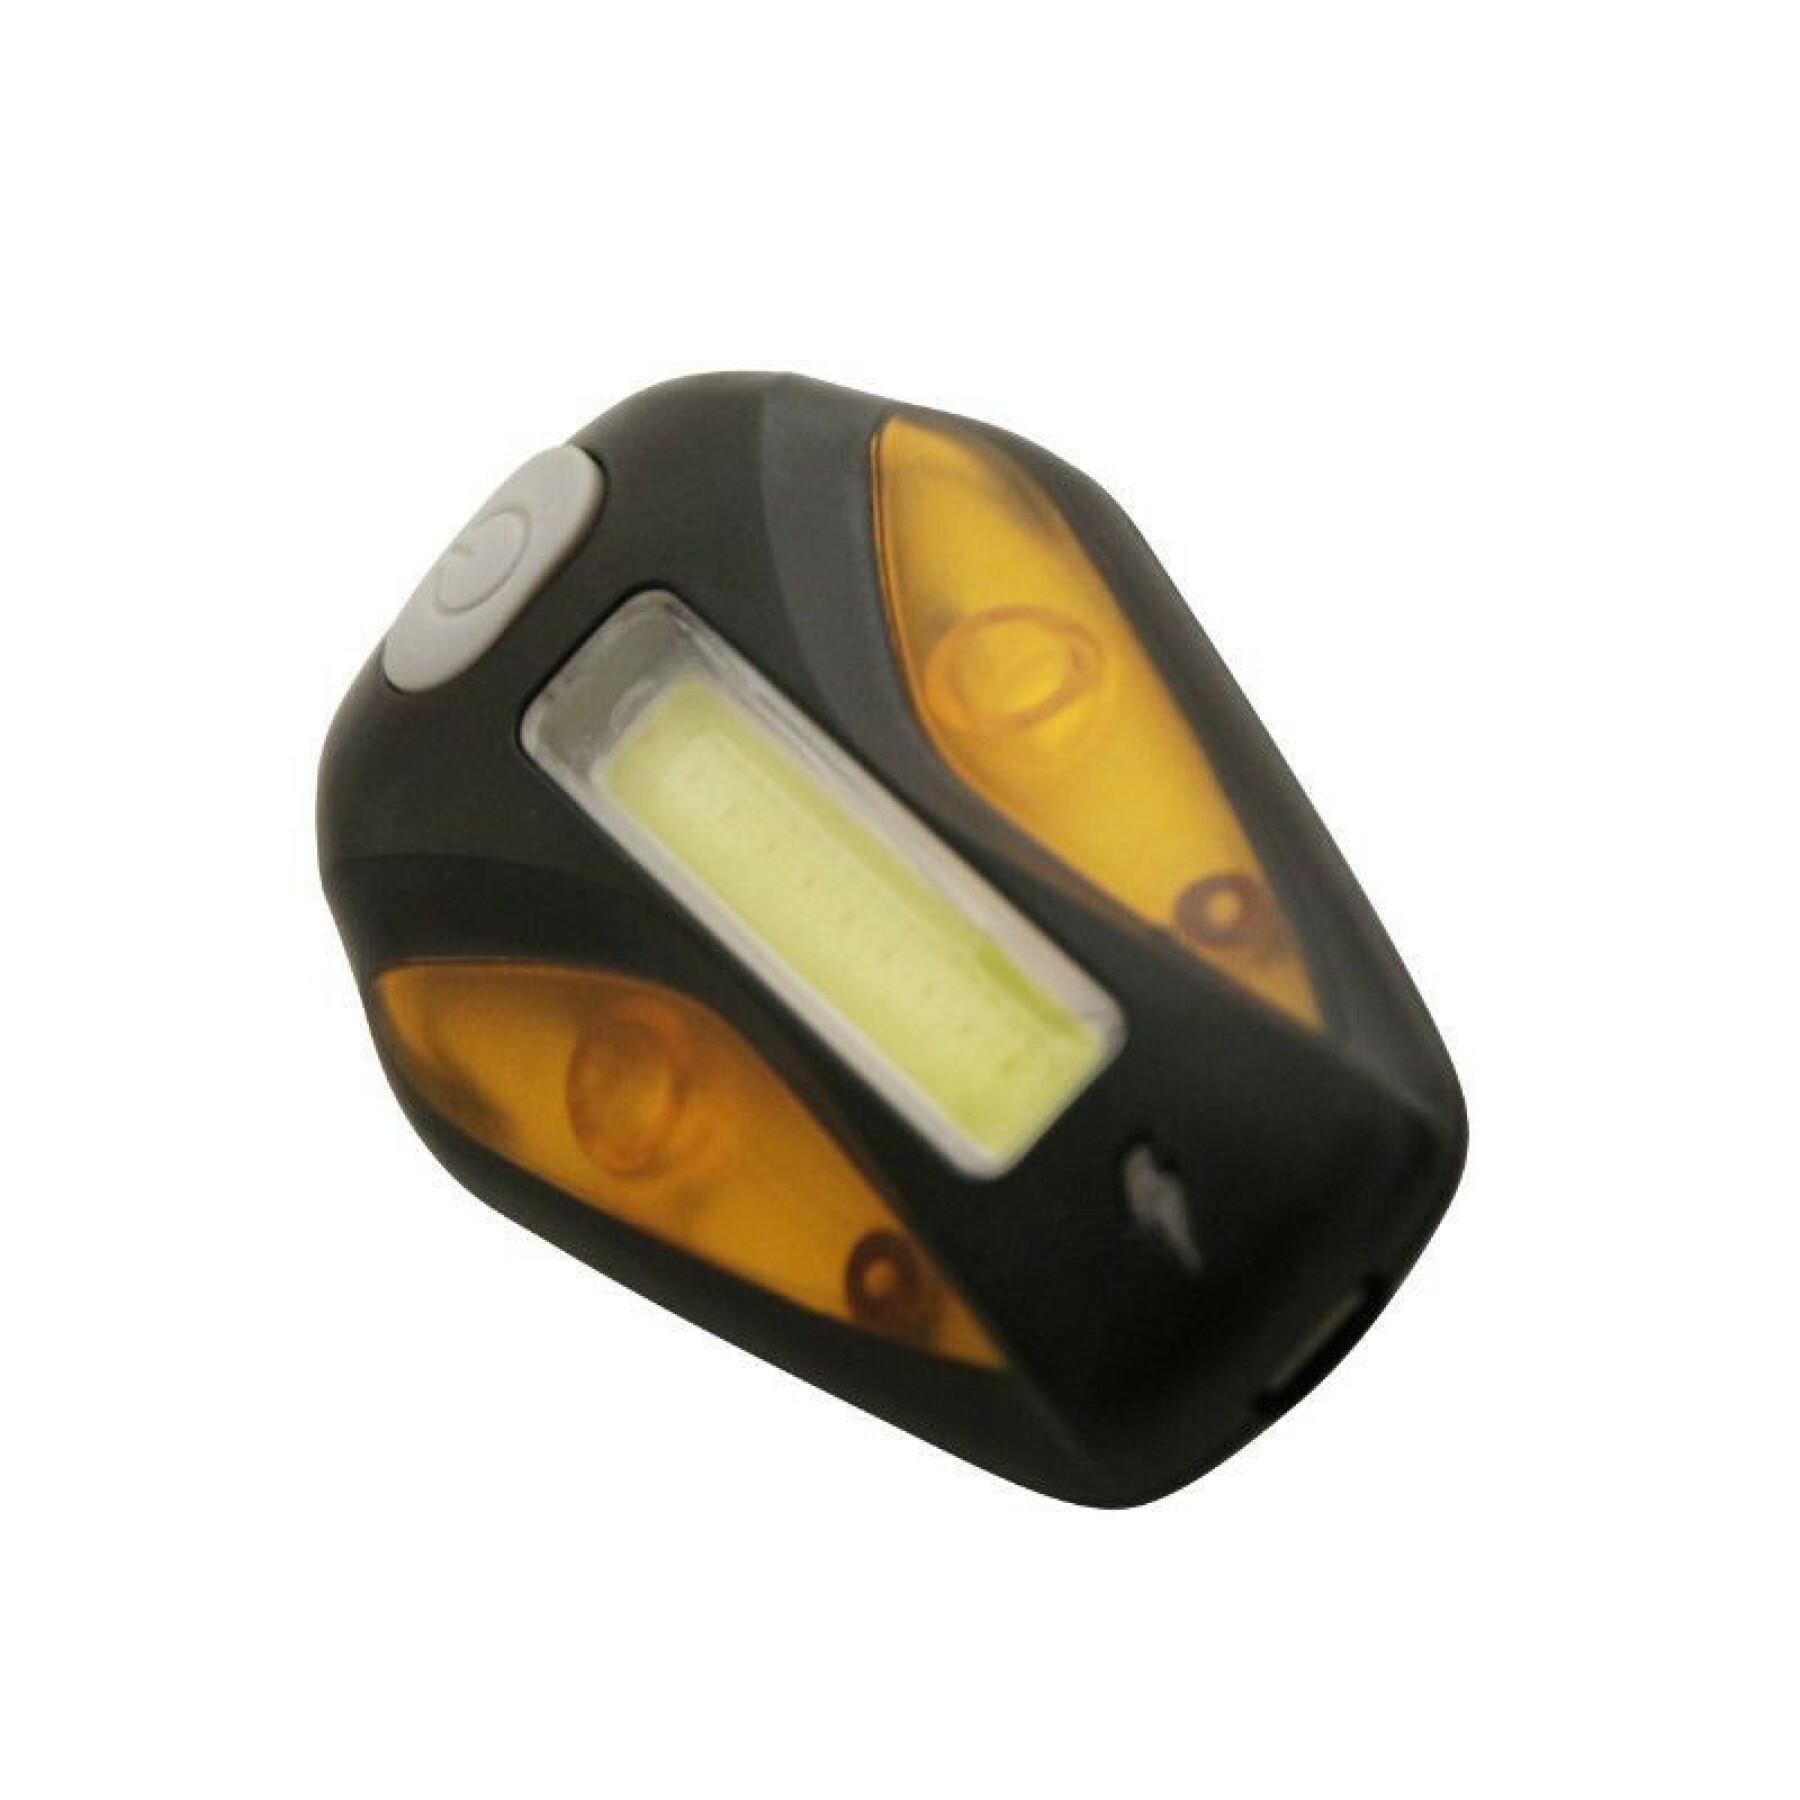 iluminação usb do guiador dianteiro ou traseiro (funções fixas e intermitentes) com visibilidade lateral Newton Bar Cob Leds 100 Lumens